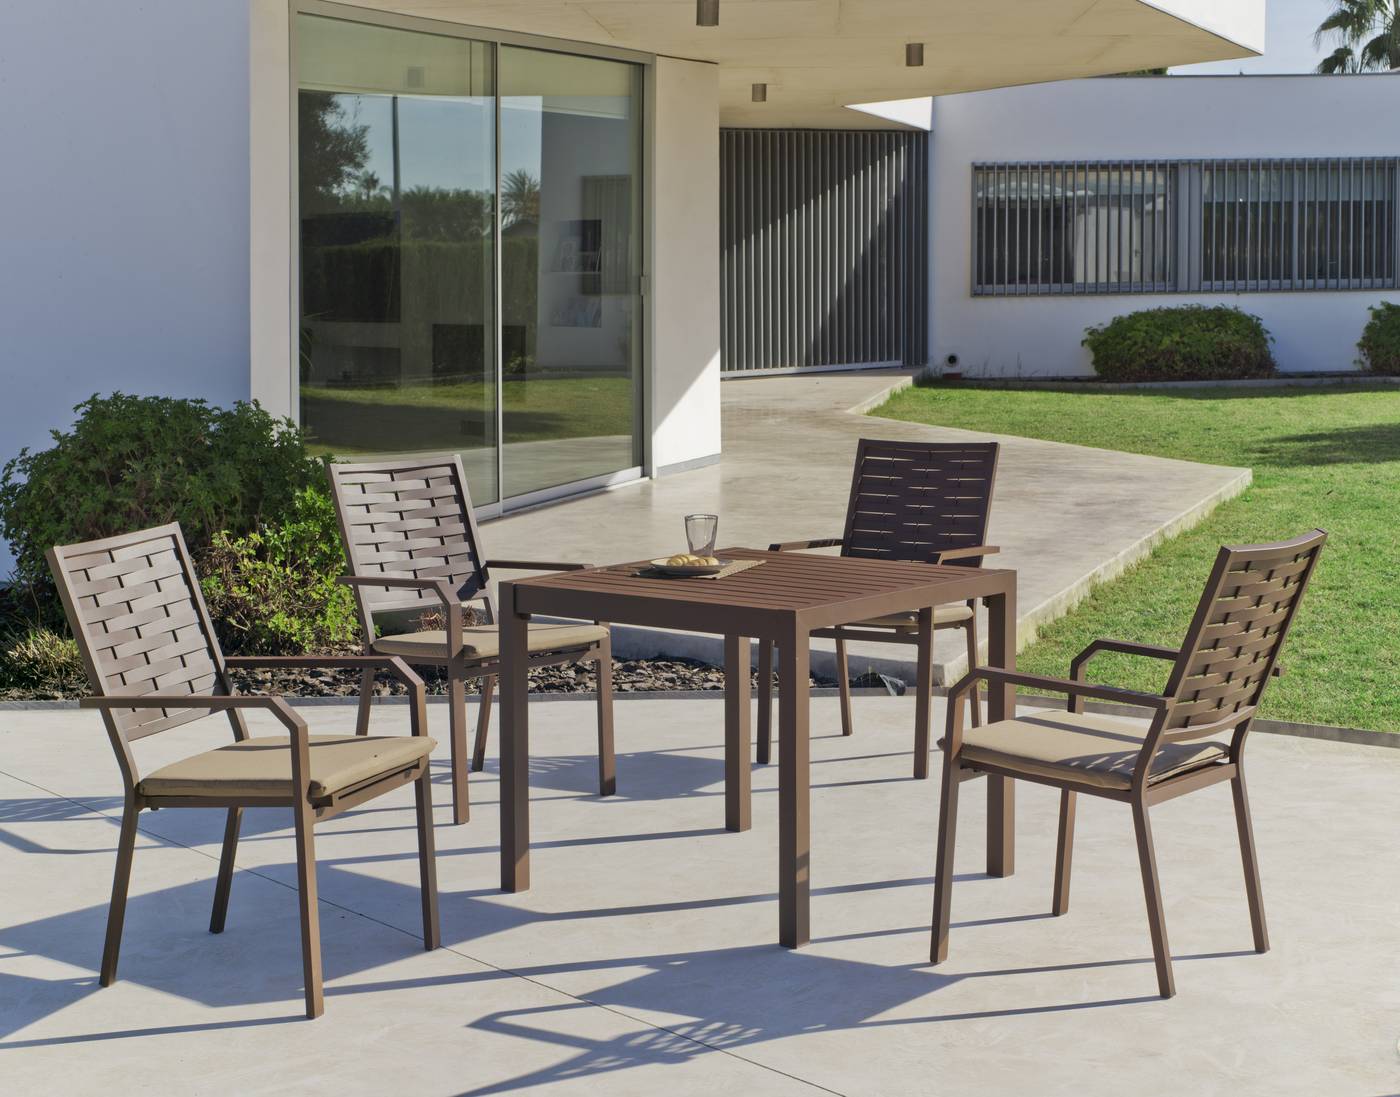 Set Aluminio Palma-Augusta 90-4 - Conjunto de aluminio luxe para jardín o terraza: Mesa cuadrada 90 cm. + 4 sillones. Disponible en color blanco, bronce, antracita y champagne.